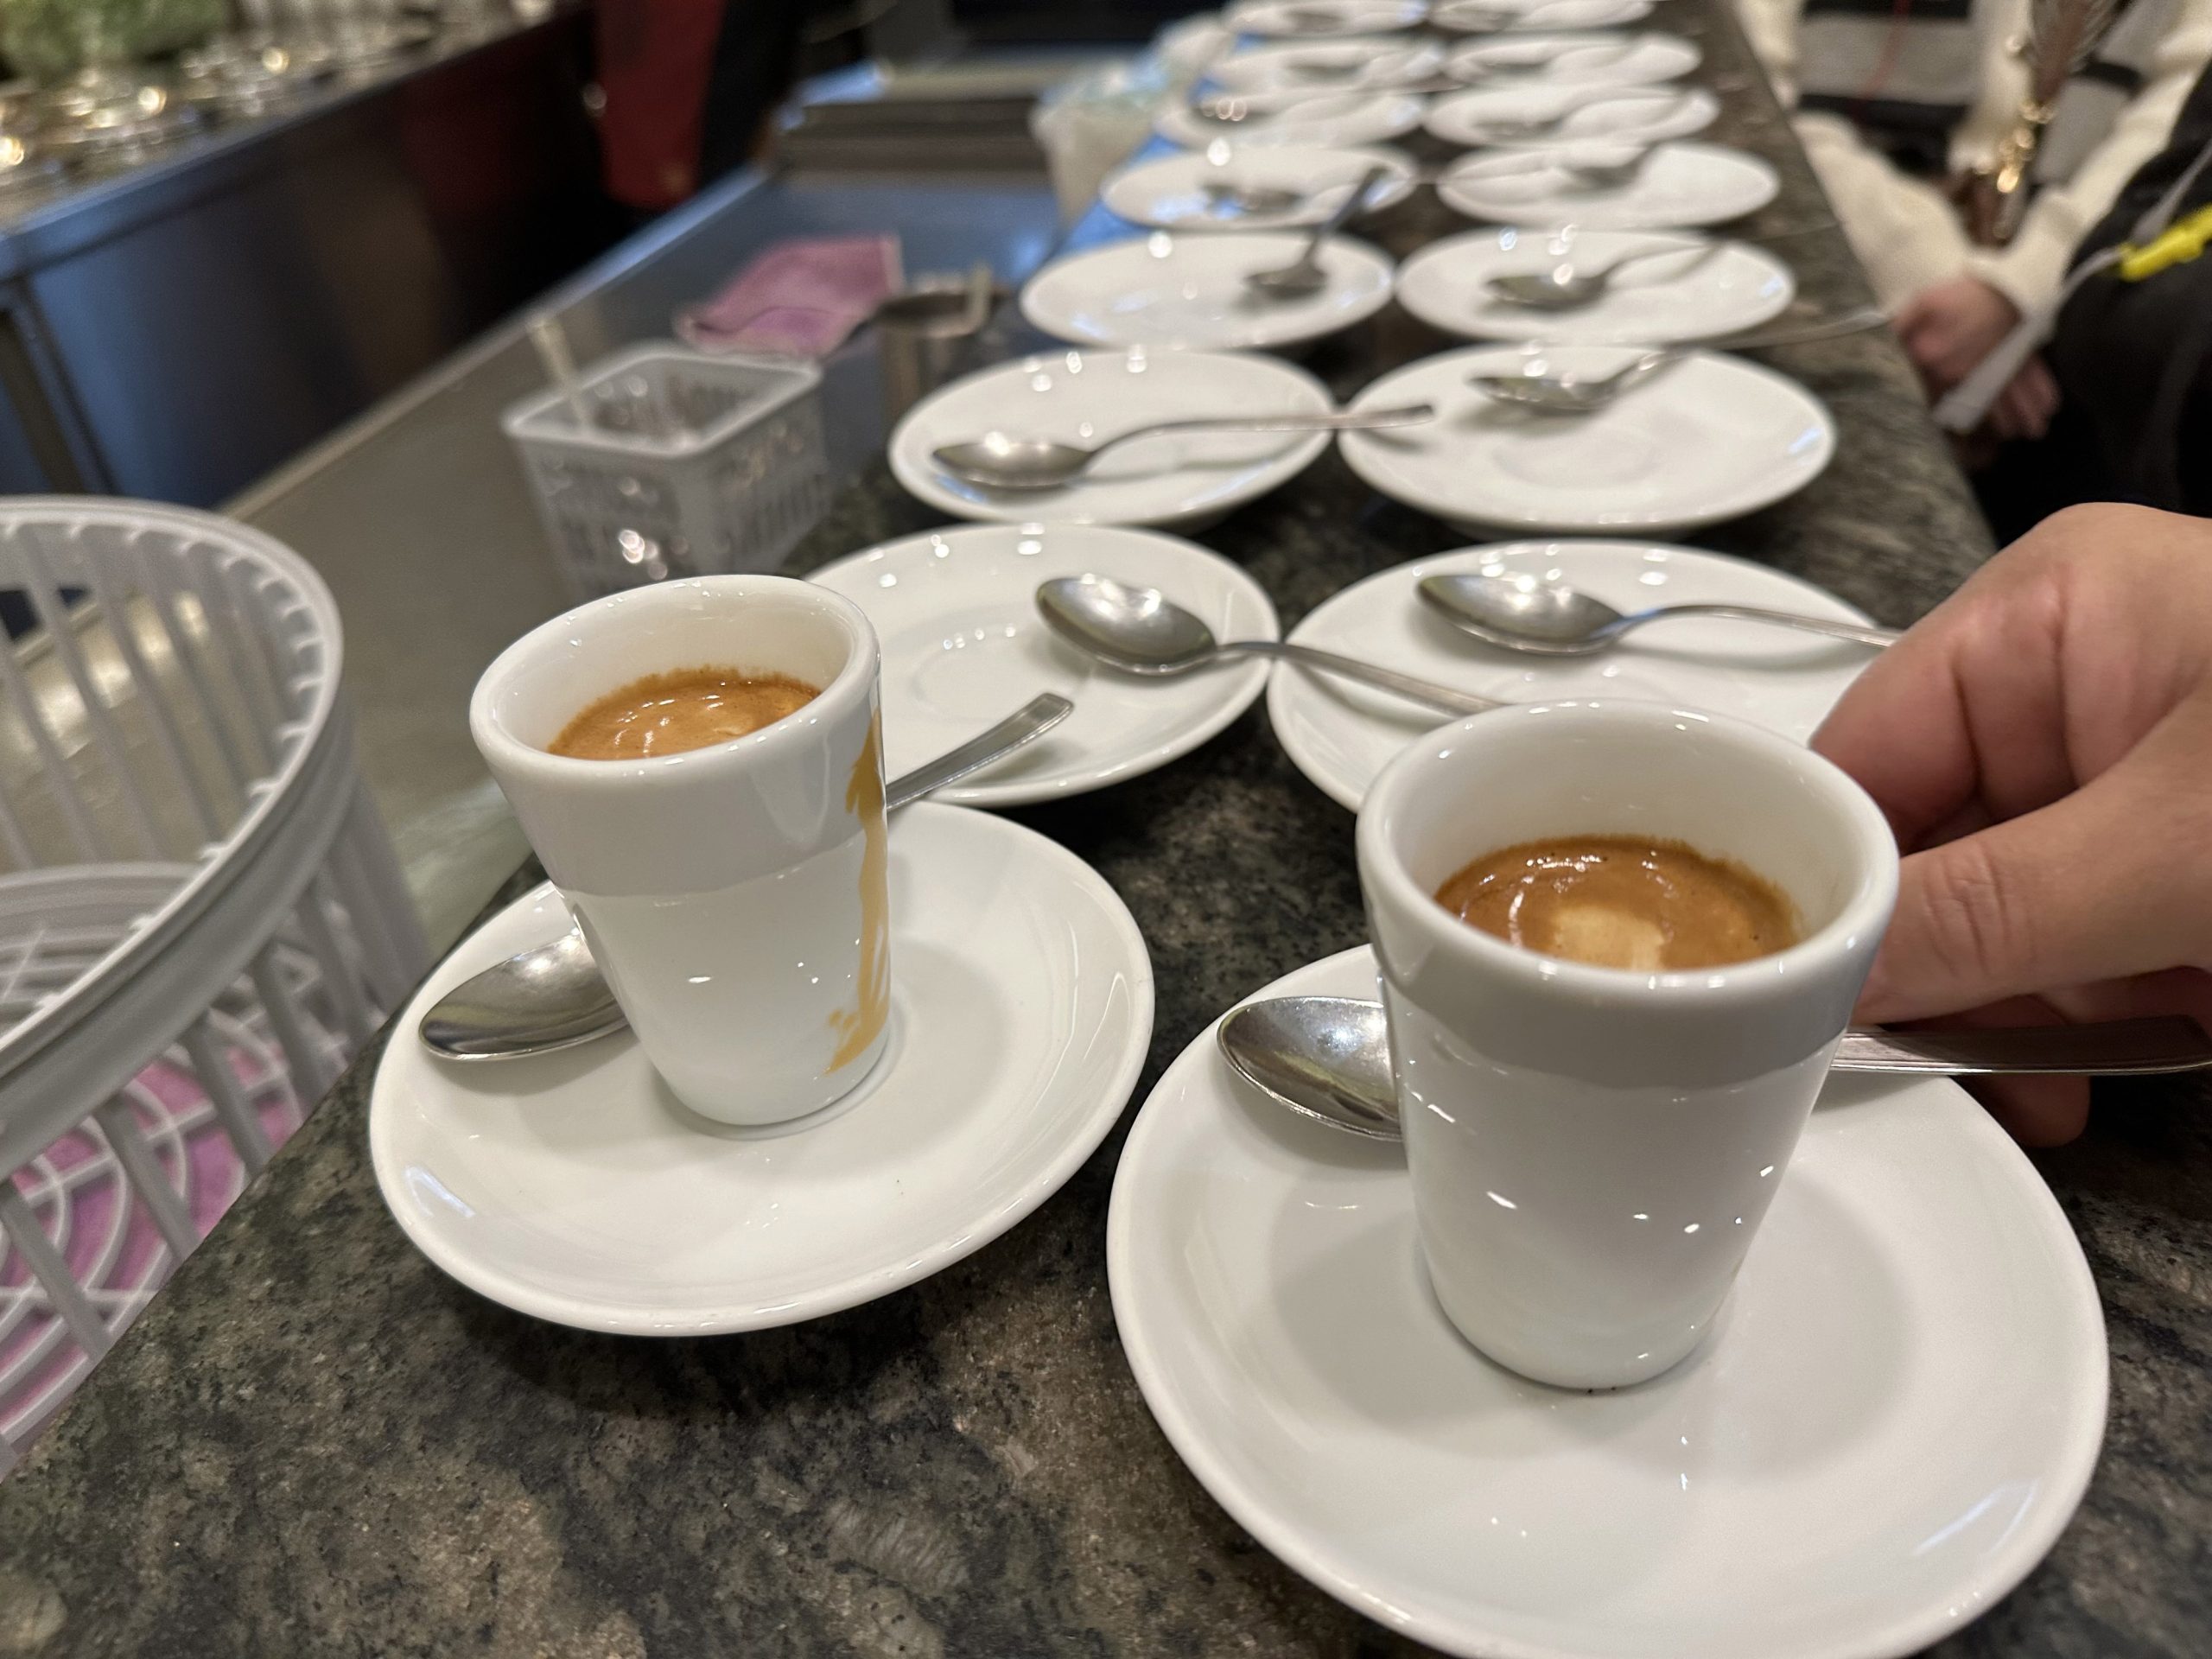 金杯咖啡 義大利 羅馬 阿拉比卡 摩卡壺 手沖咖啡 Golden Cup Coffee Italy Rome Arabica Moka Pot Hand-brewed Coffee